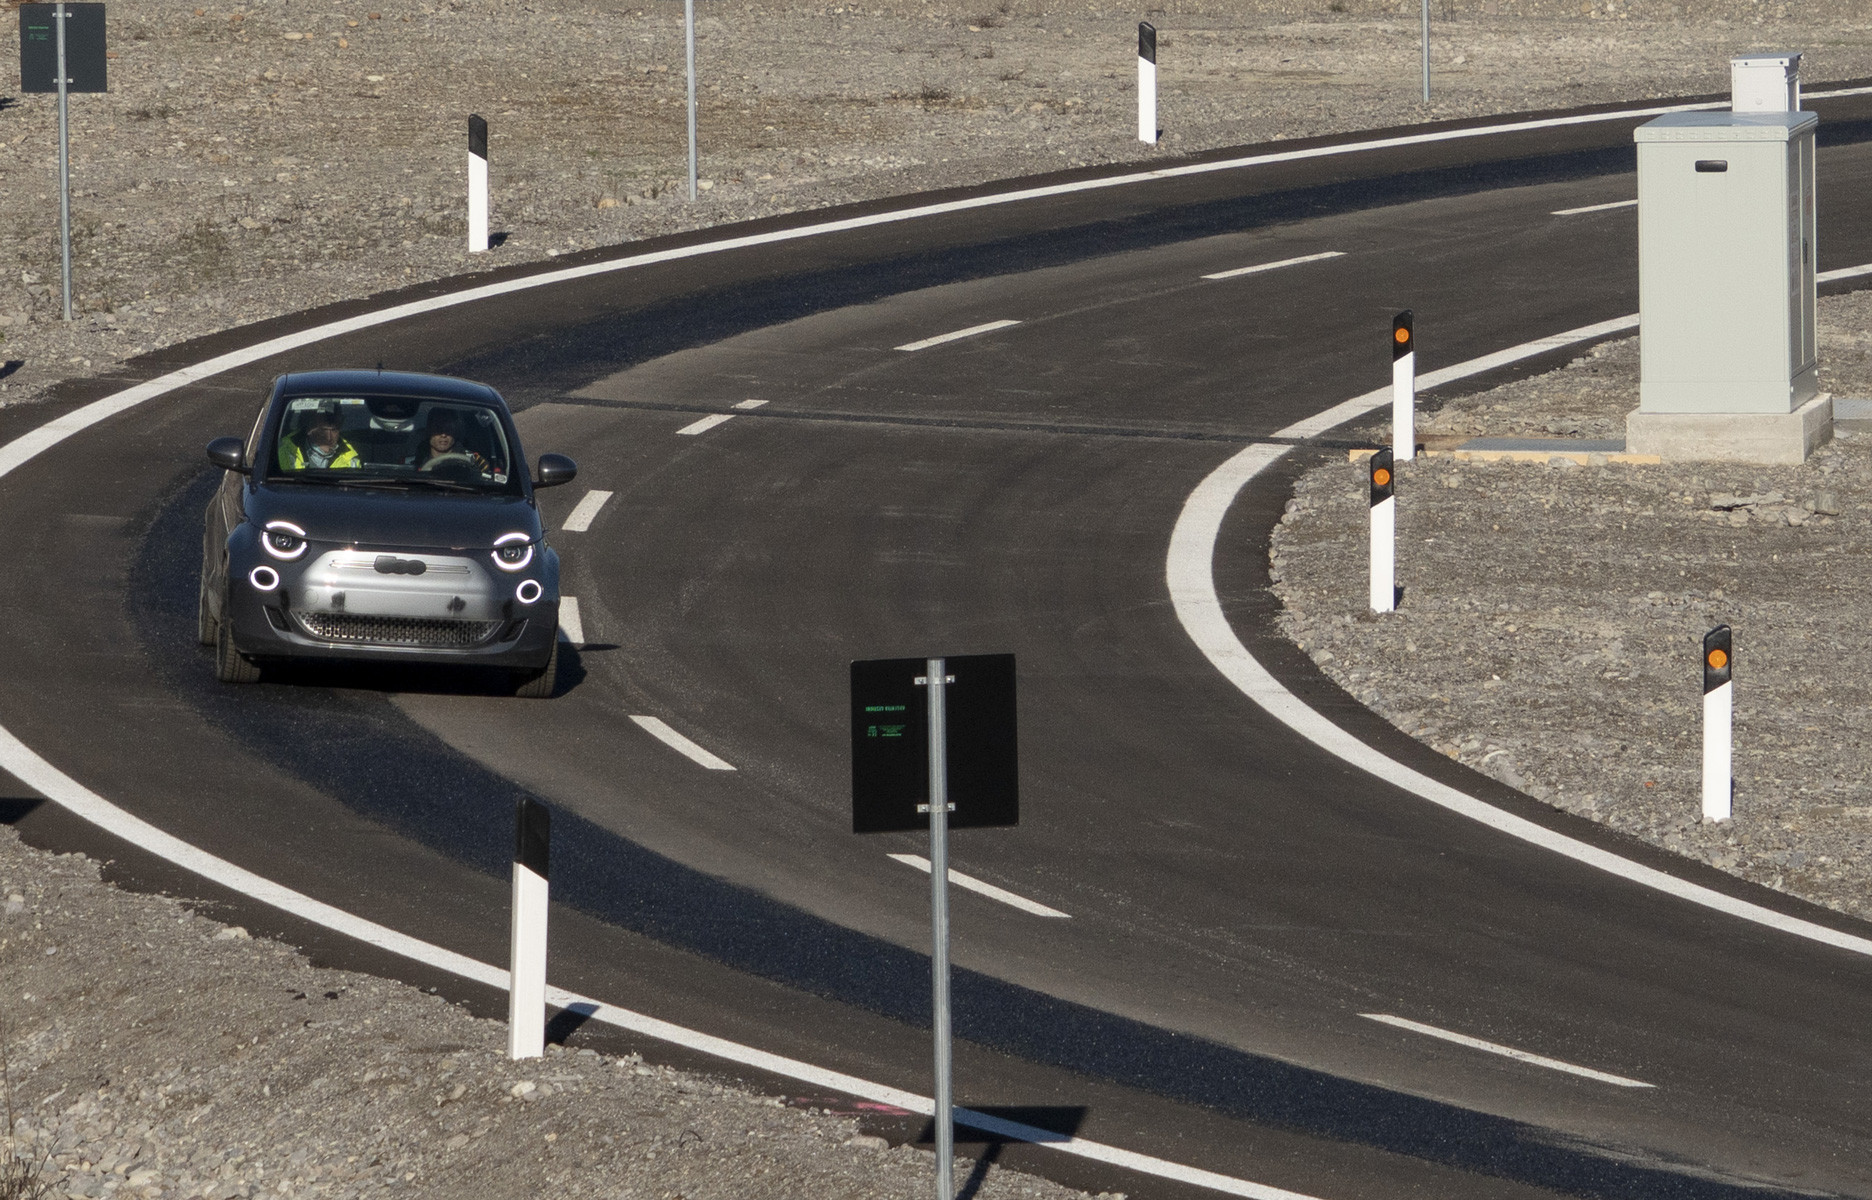 Sébastien Loeb, la vitesse sur autoroute et les voitures électriques